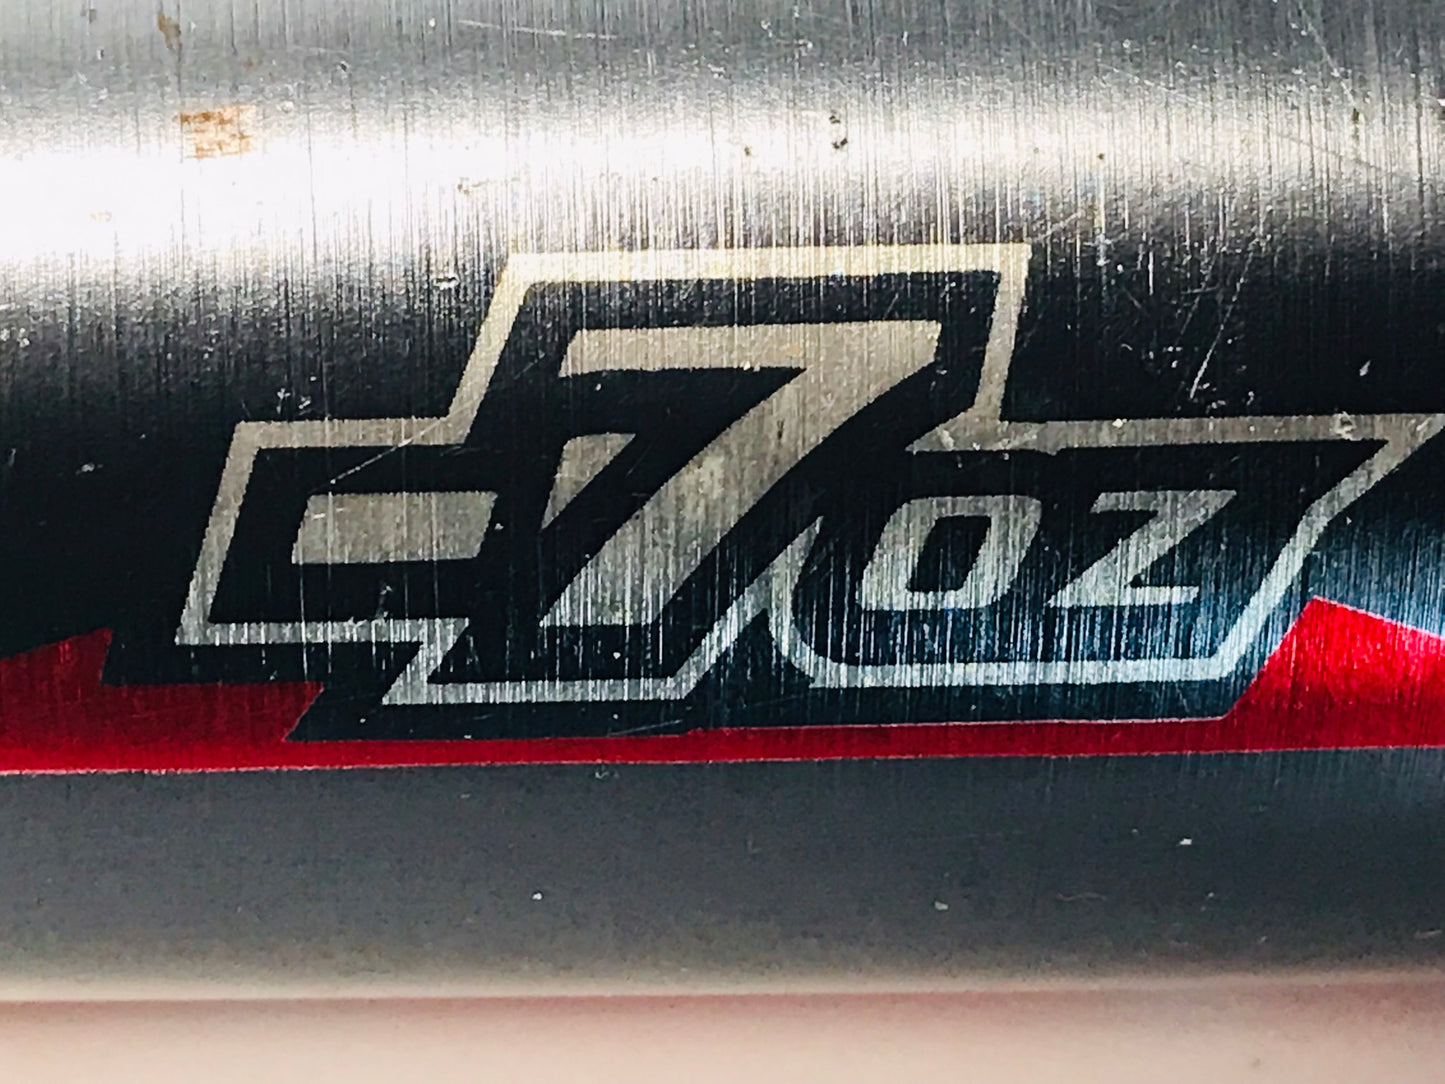 Baseball Bat 28 inch 21 oz Worth Powerflex Grey Red